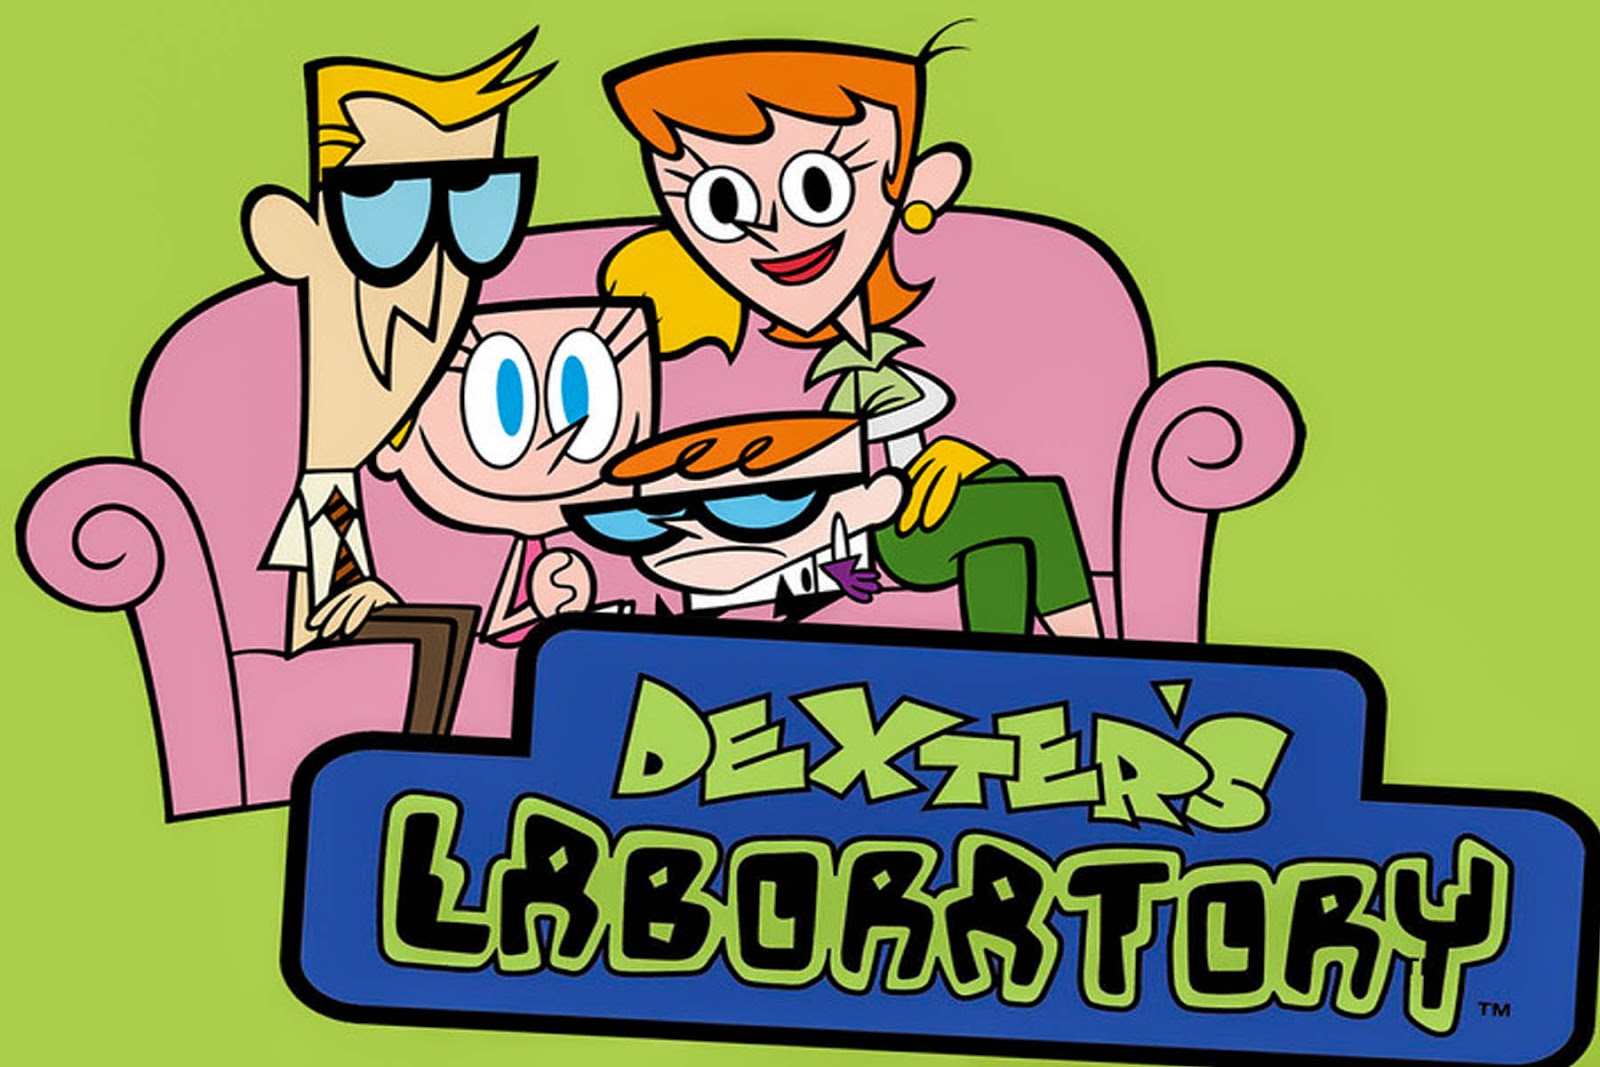 T me swaps up. Dexter s Laboratory. Декстер лаборатория Декстера. Картун нетворк лаборатория Декстера. Лаборатория Декстера Диди.